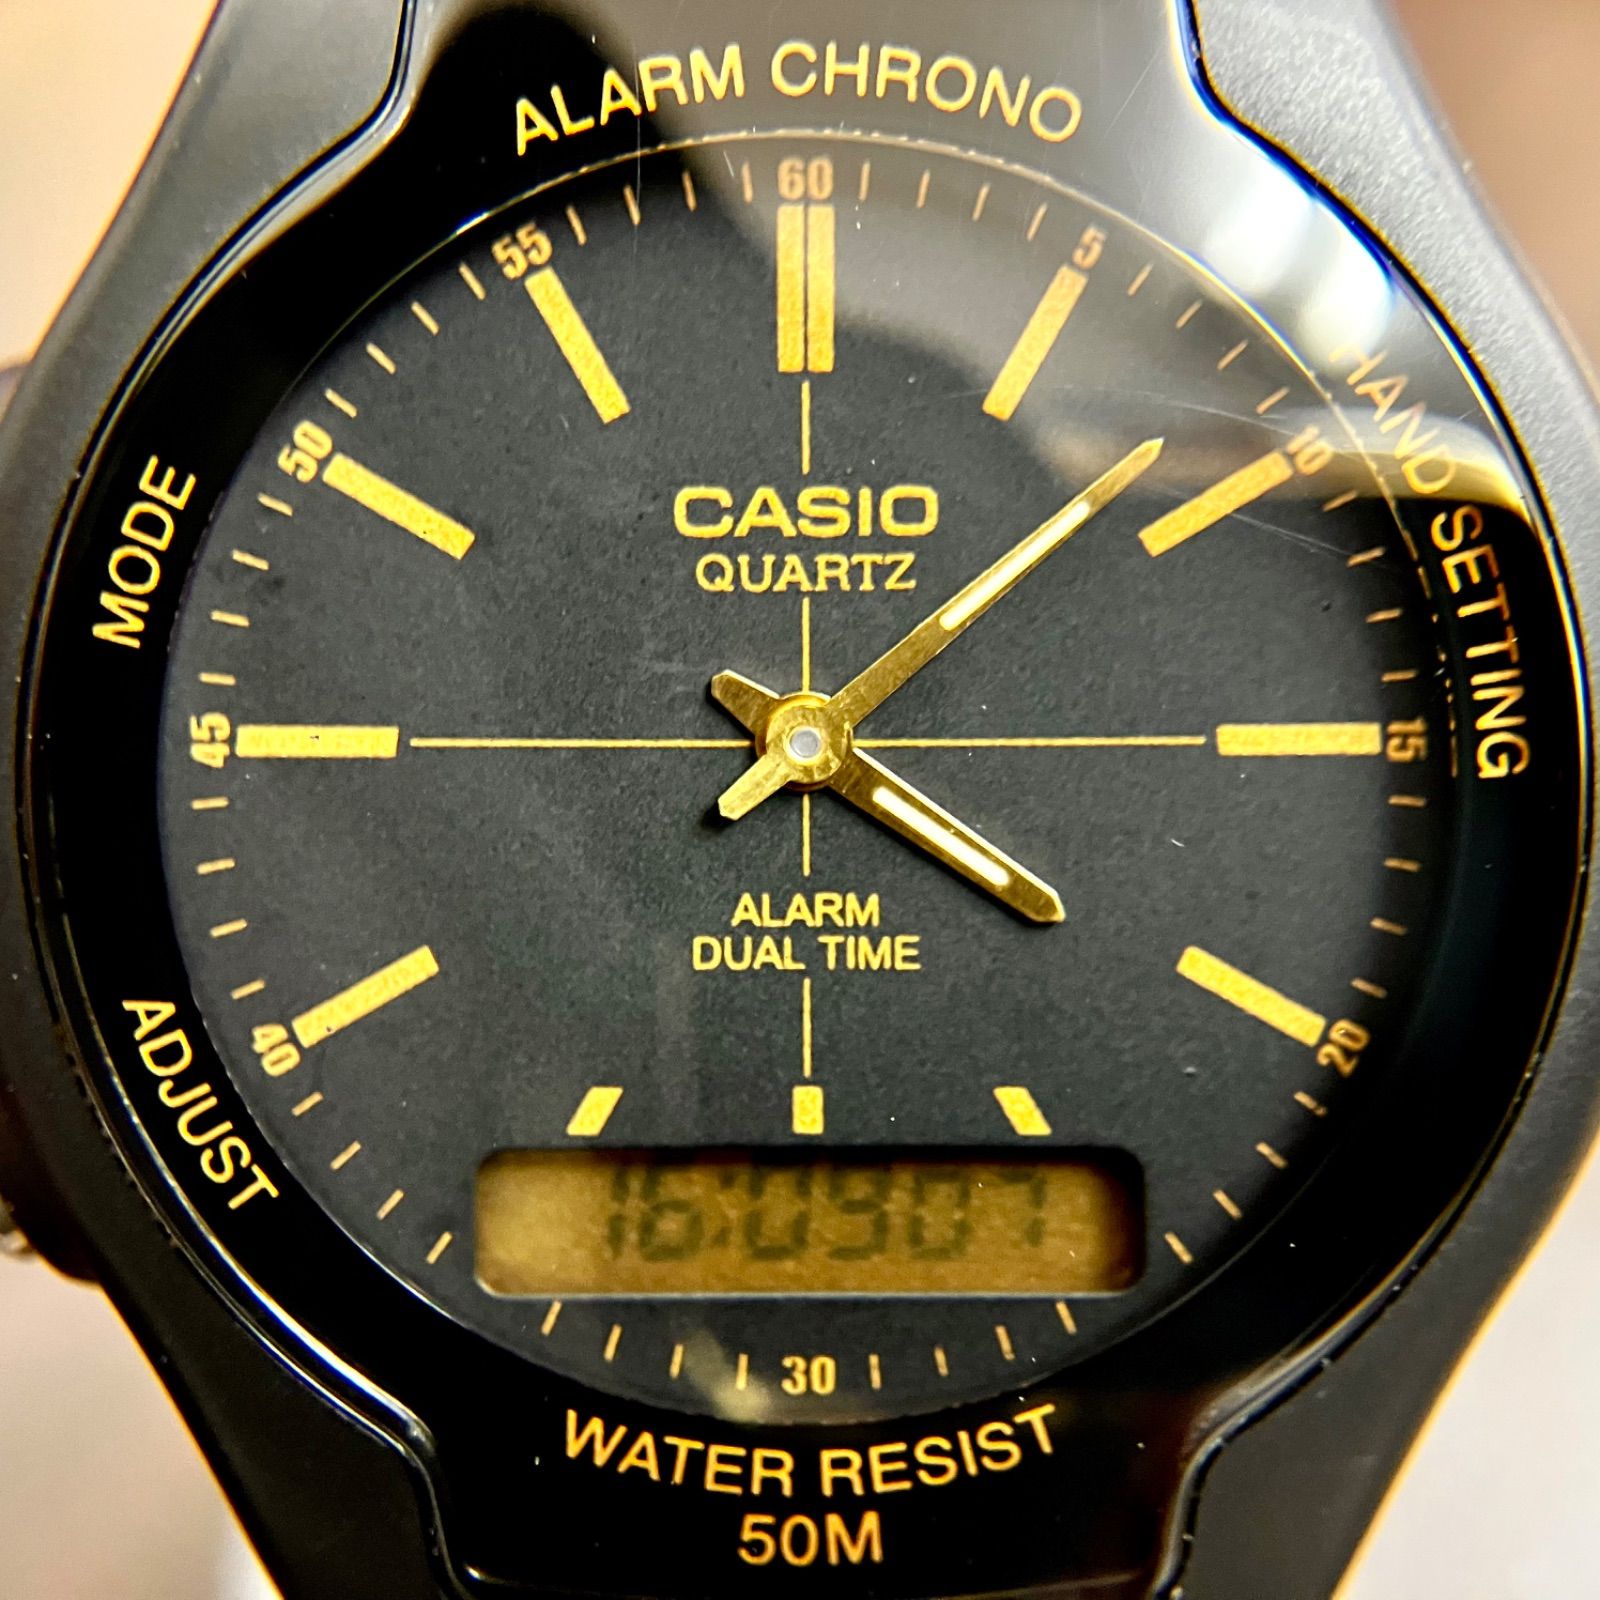 チプカシアナデジ⭐️ 黒金超美品 電池交換】 CASIO カシオ ユニセックス腕時計 アナログデジタル チープカシオシリーズ ブラックゴールド  文字盤 見やすい （AYA） たからやま メルカリ